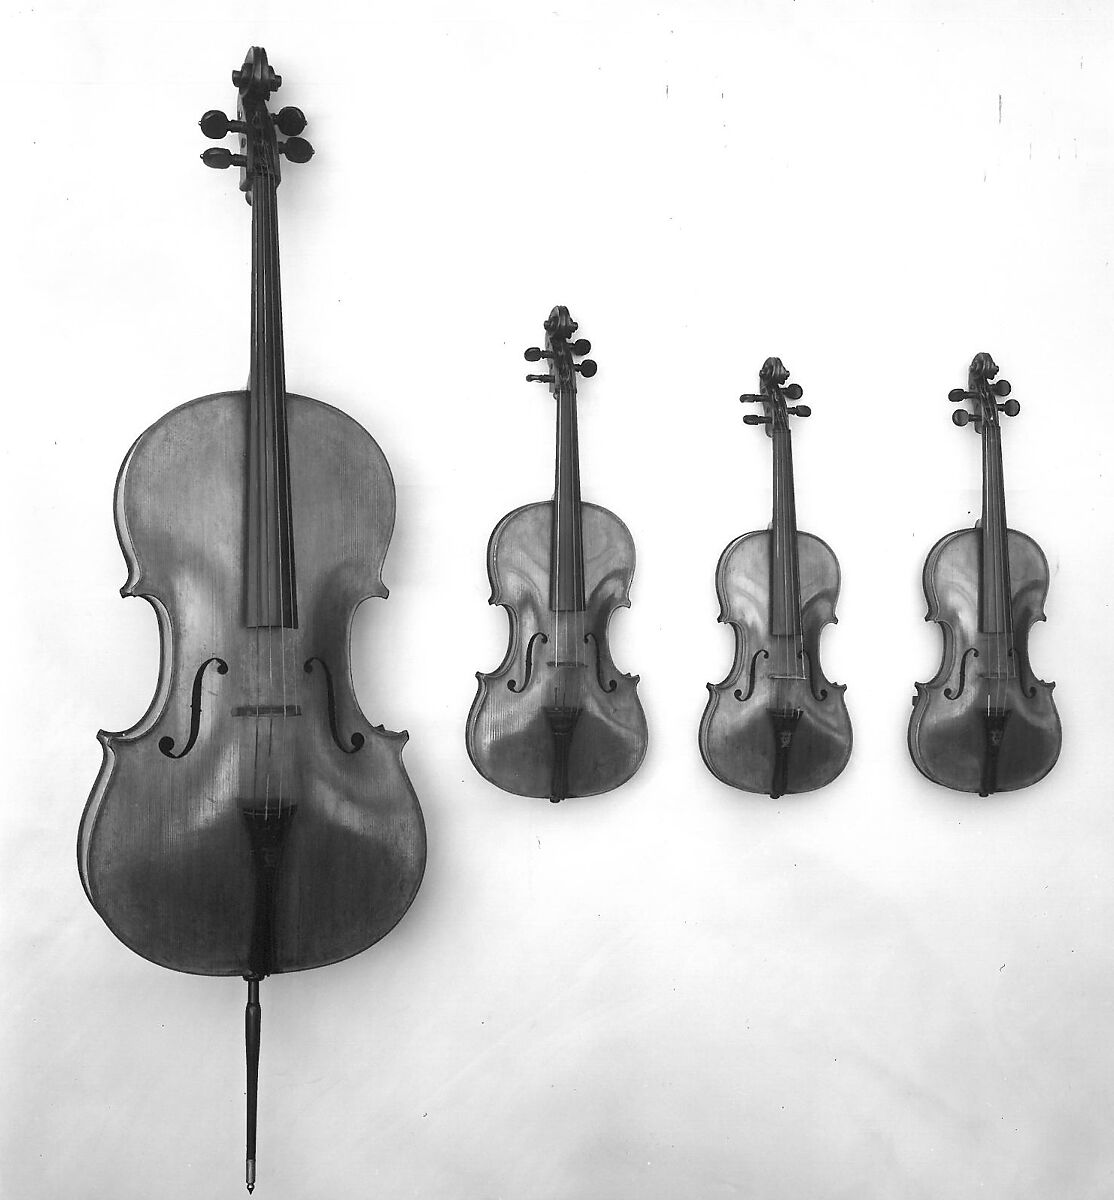 Violoncello, August Martin Gemünder, Wood, string, American 